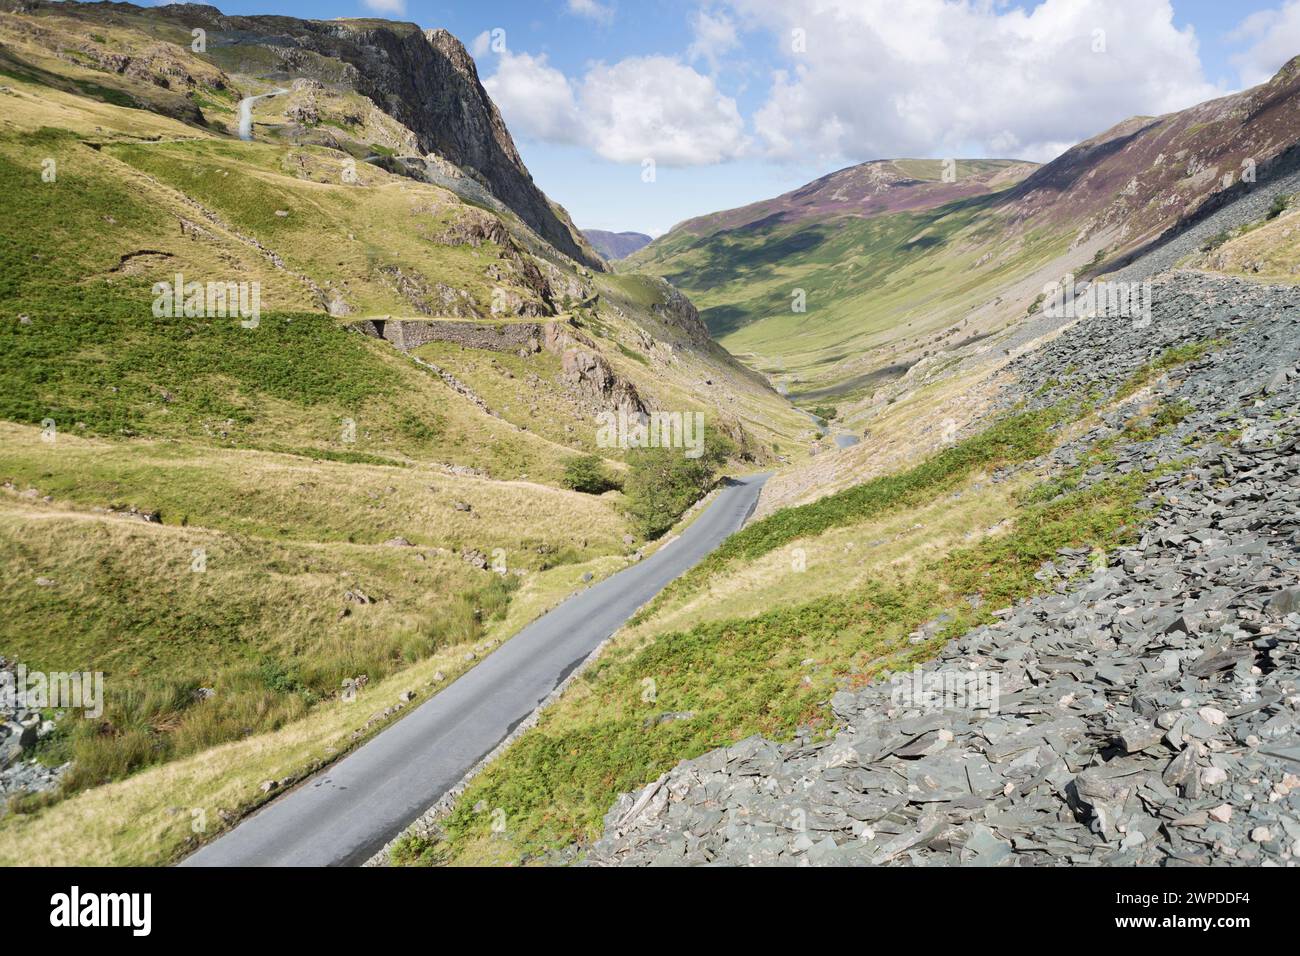 UK, Cumbria, Honnister Pass, Blick auf den Honnister Pass und eine der steilsten Straßen Großbritanniens. Stockfoto